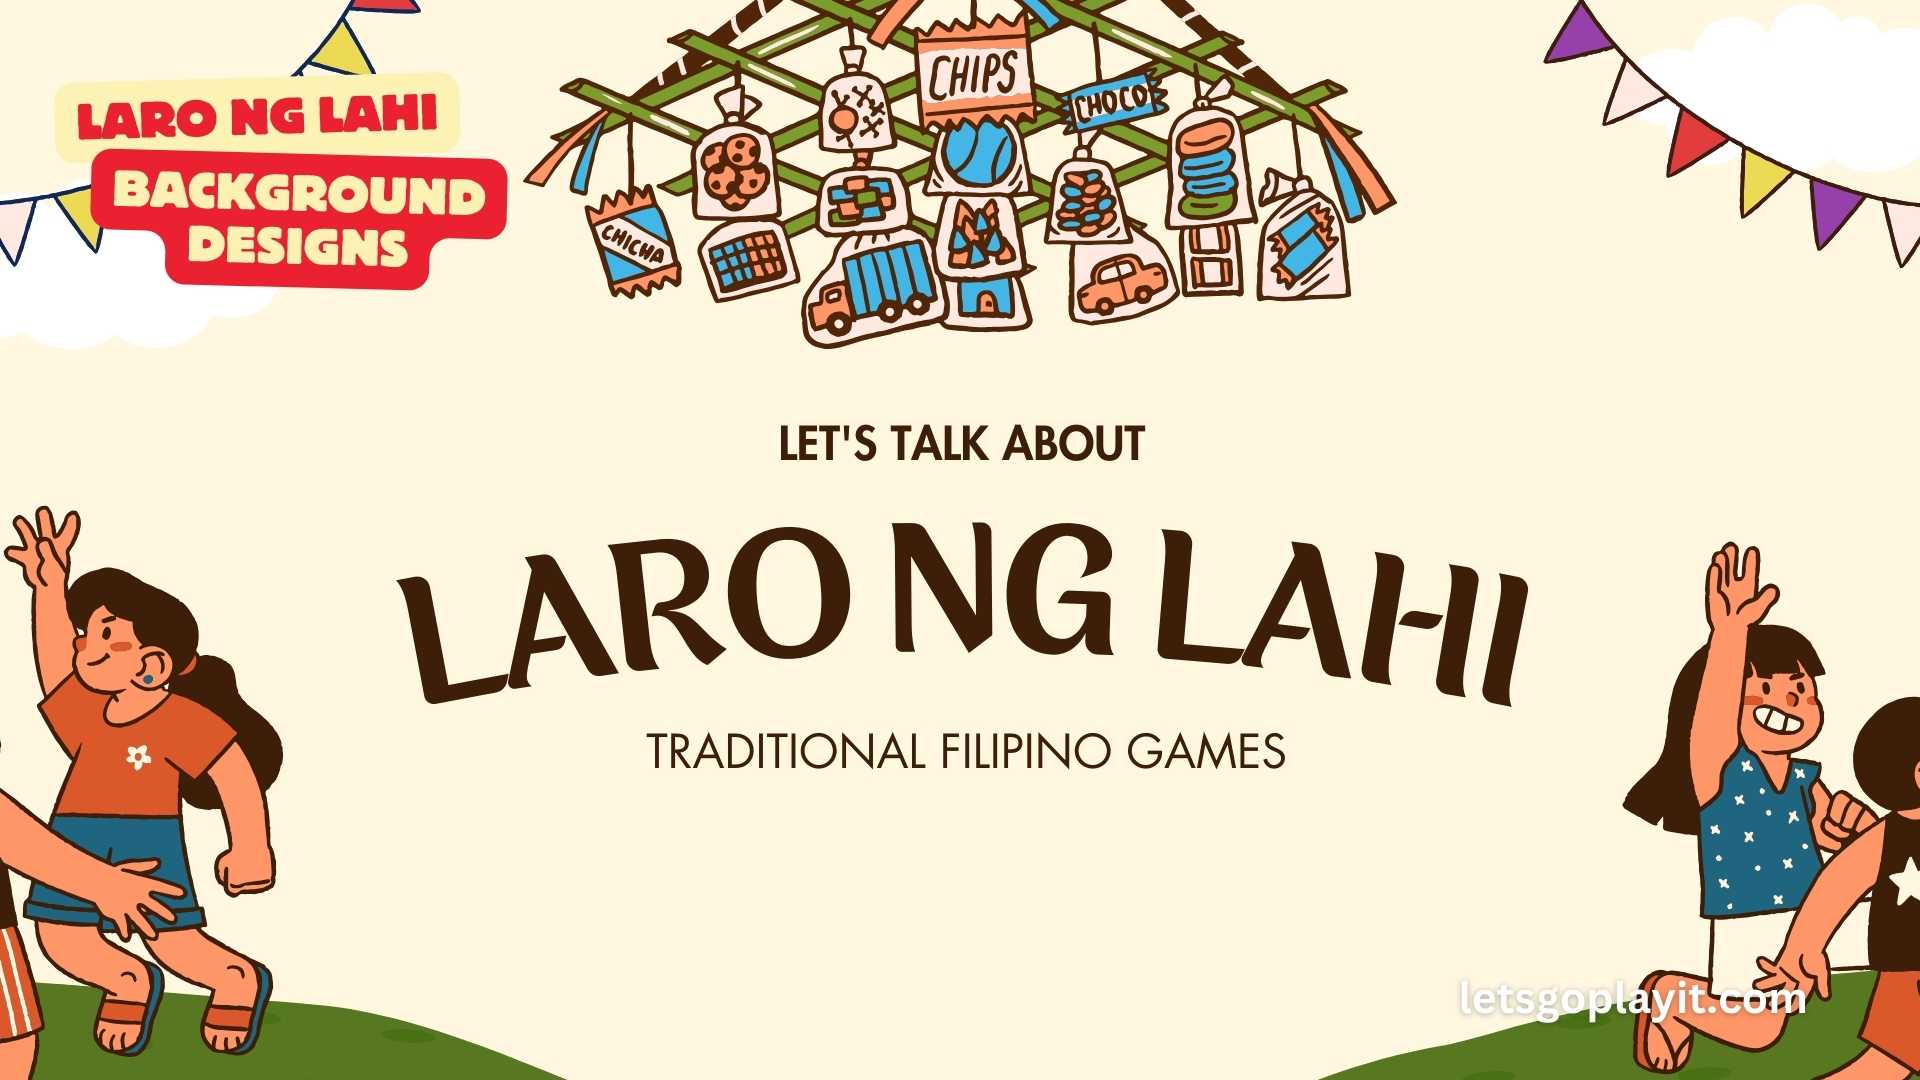 Where To Get Laro Ng Lahi Background Designs